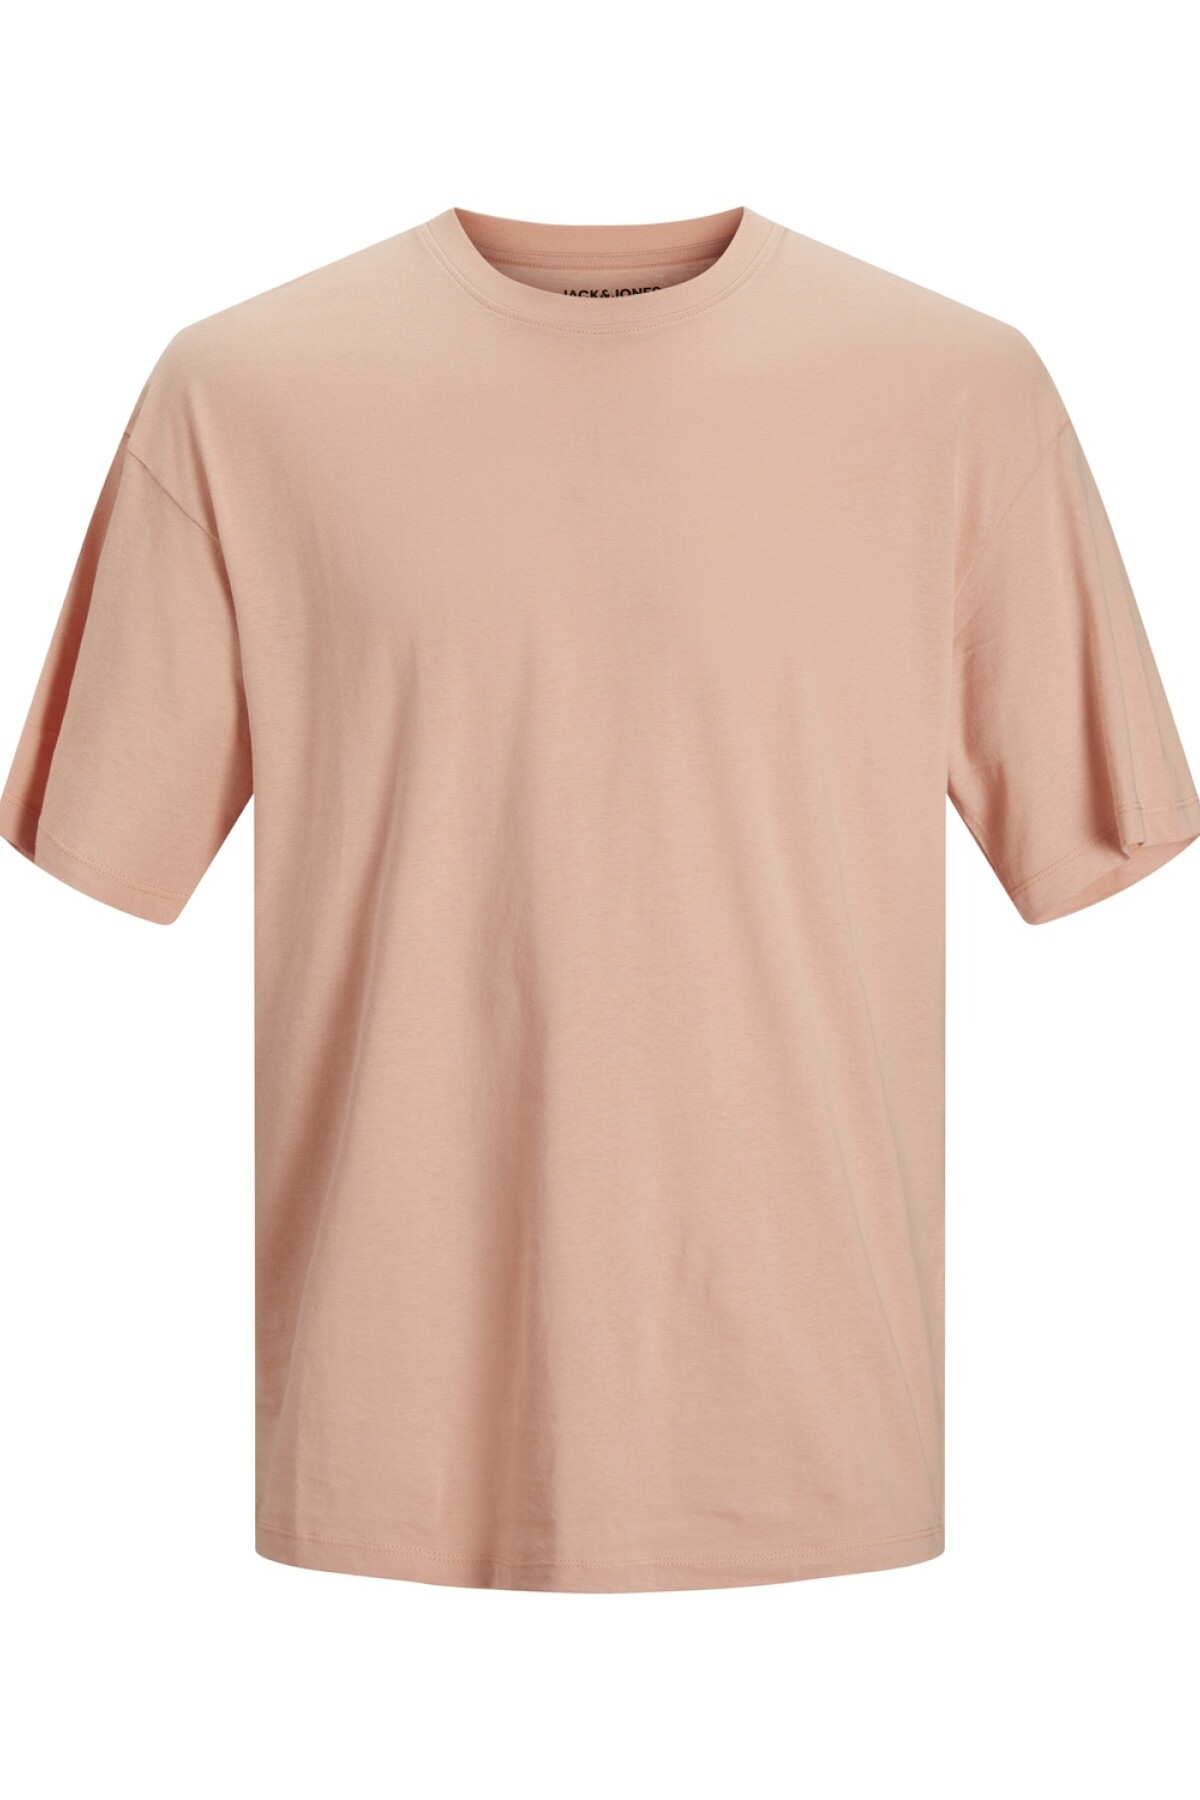 Camiseta Brink Básica Coral Pink